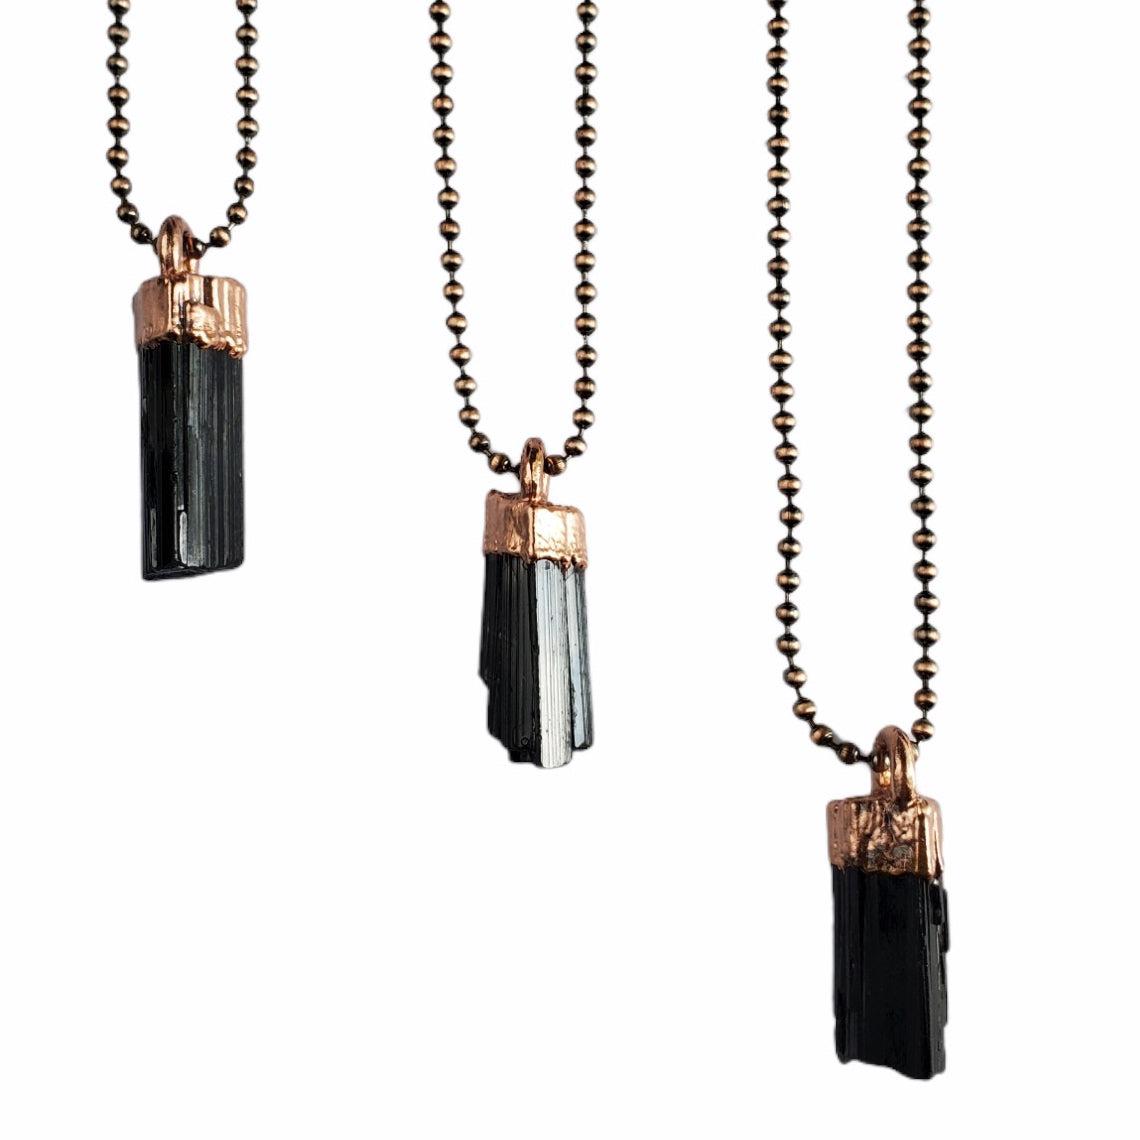 Black Tourmaline Necklace - Copper Ball Chain